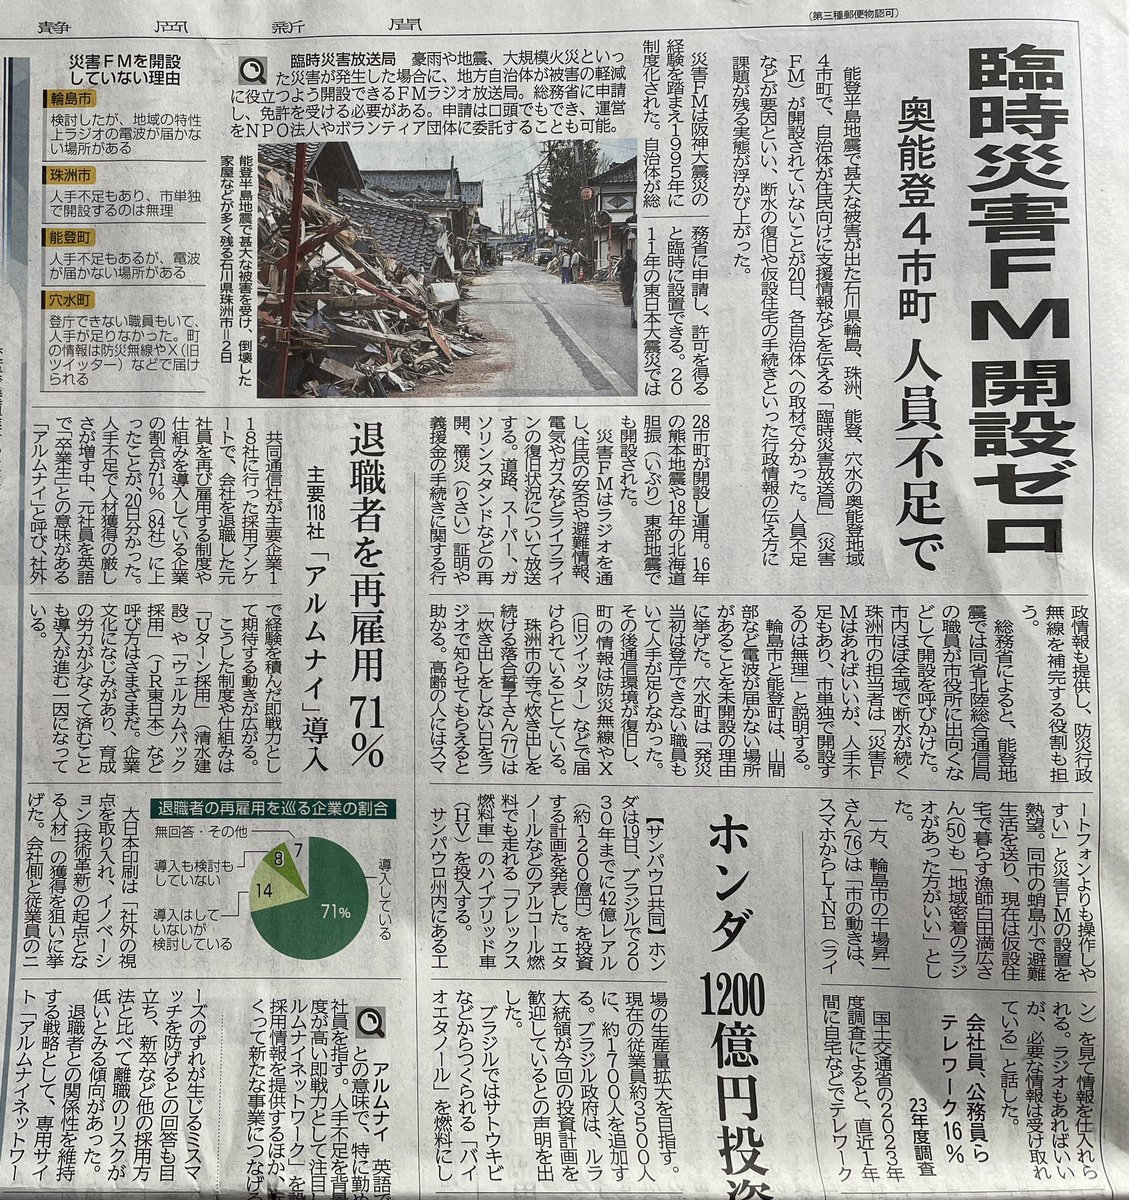 今朝の静岡新聞。
コミュニティFMで四半世紀喋ってきて、改めて考えさせられる。